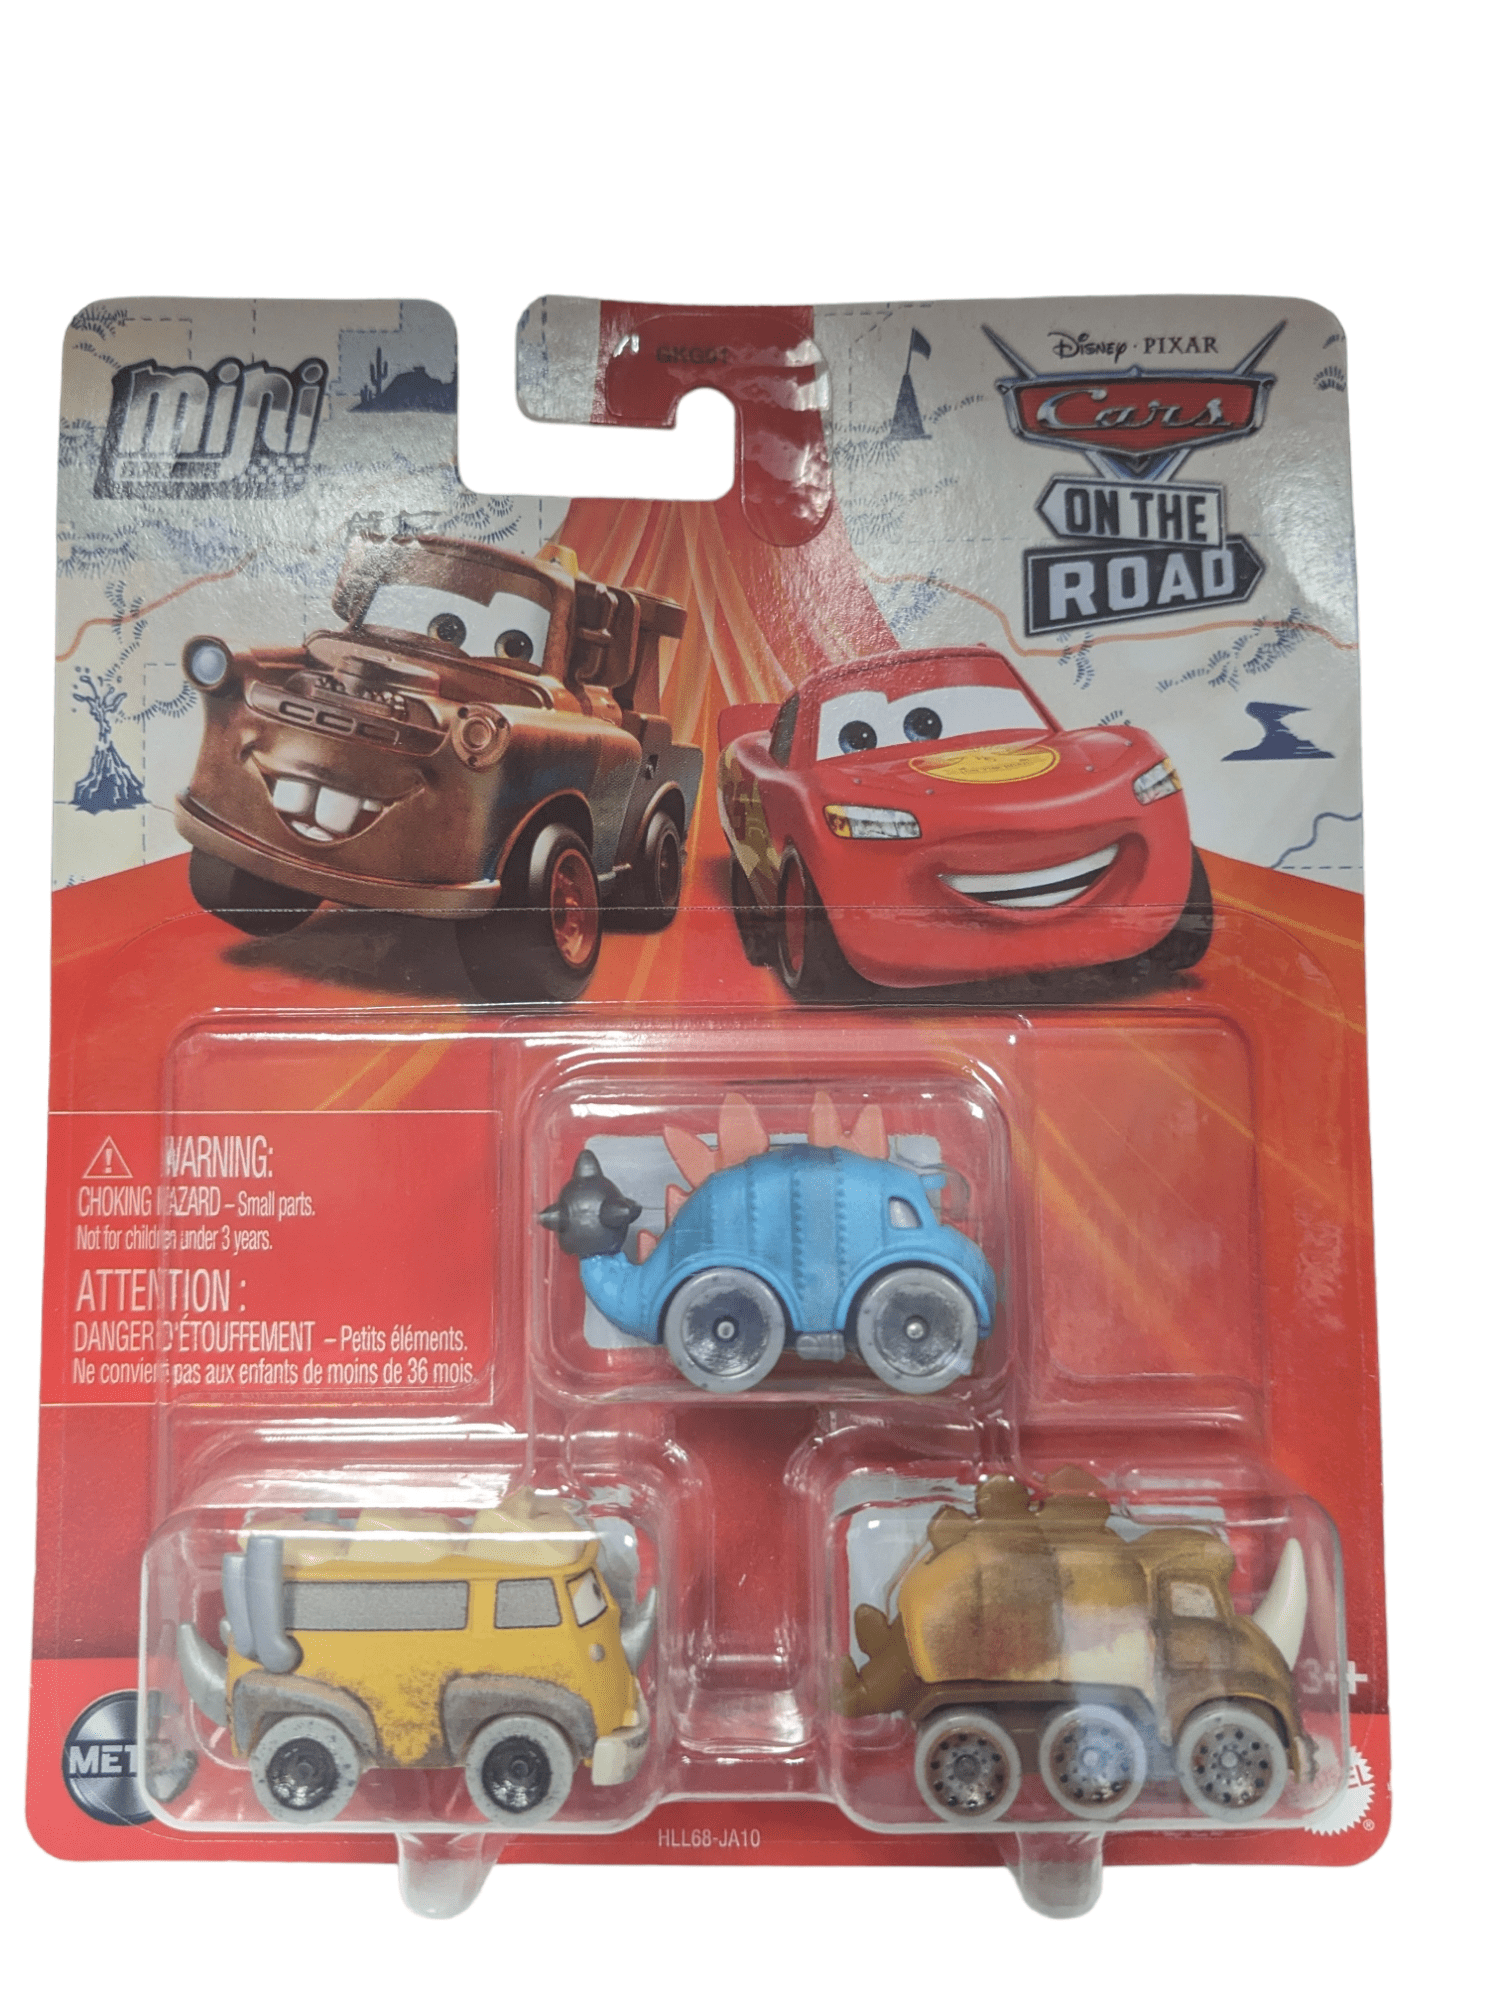 Disney Pixar Cars On the Road “QUADRATORQUOSAUR”die cast Car.